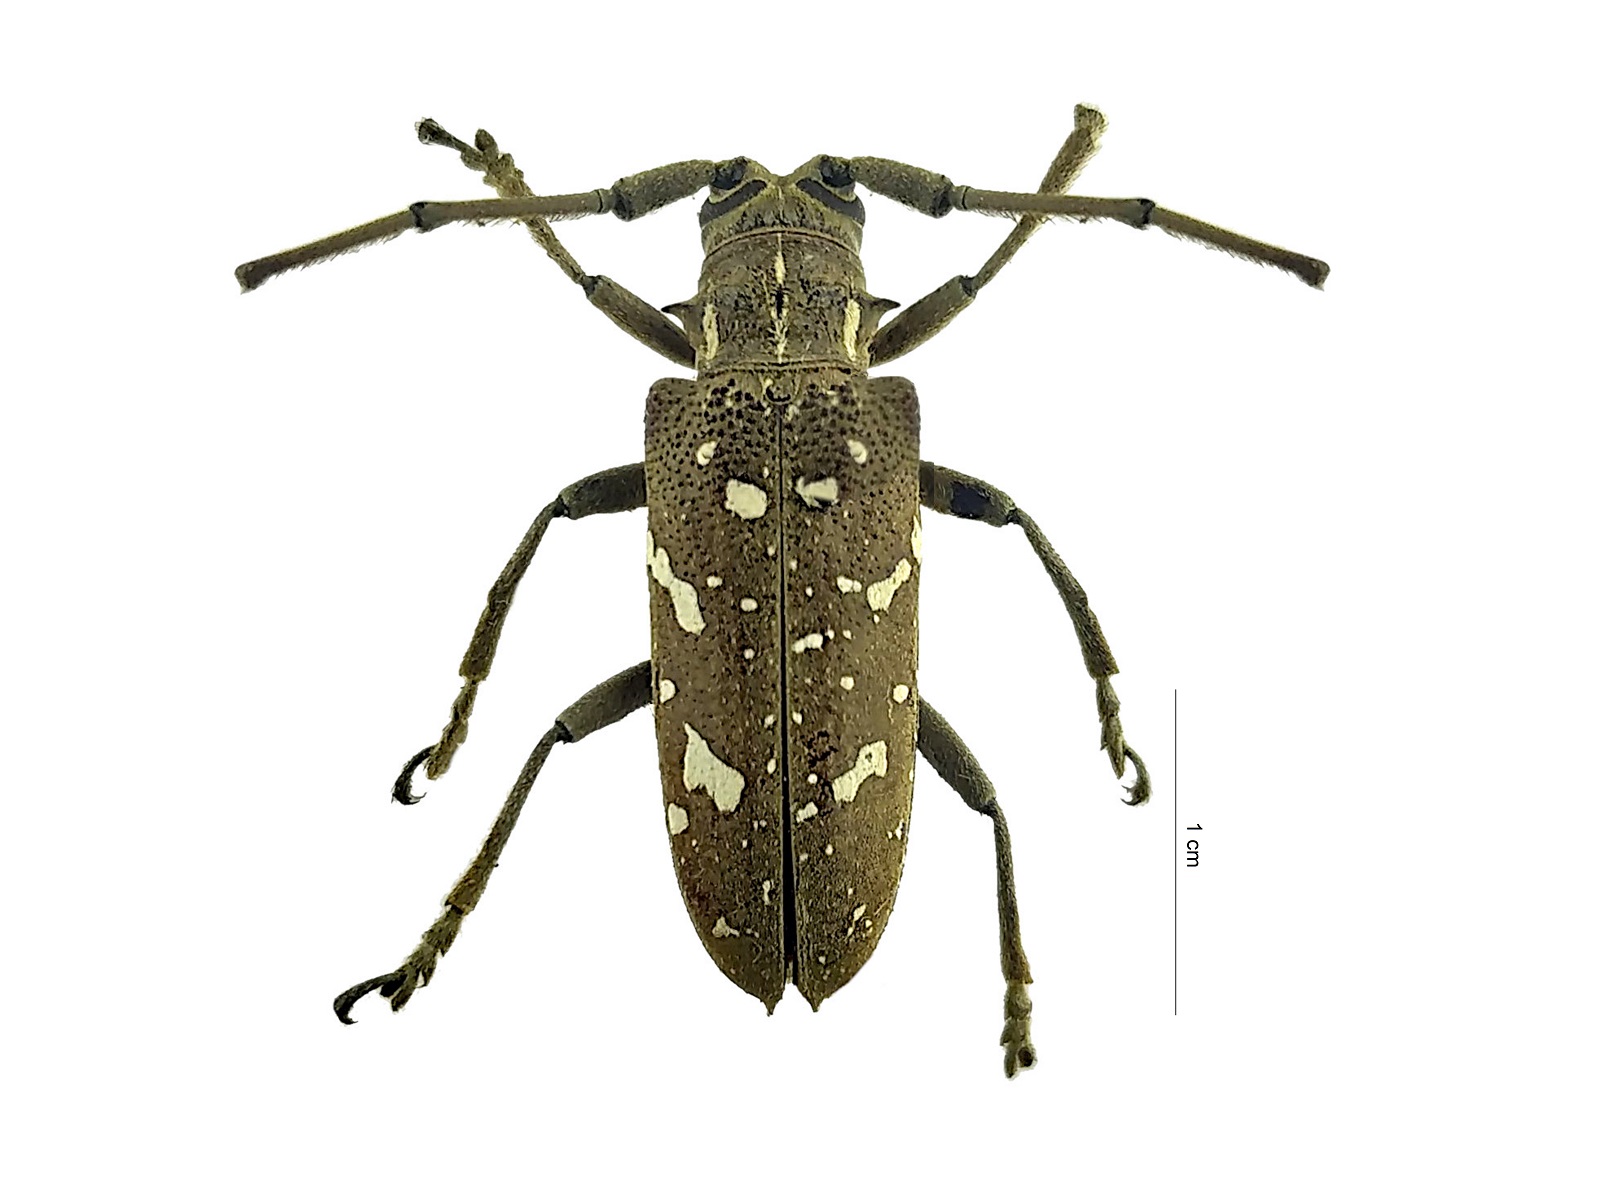 Hammatoderus thoracicus (White, 1858)